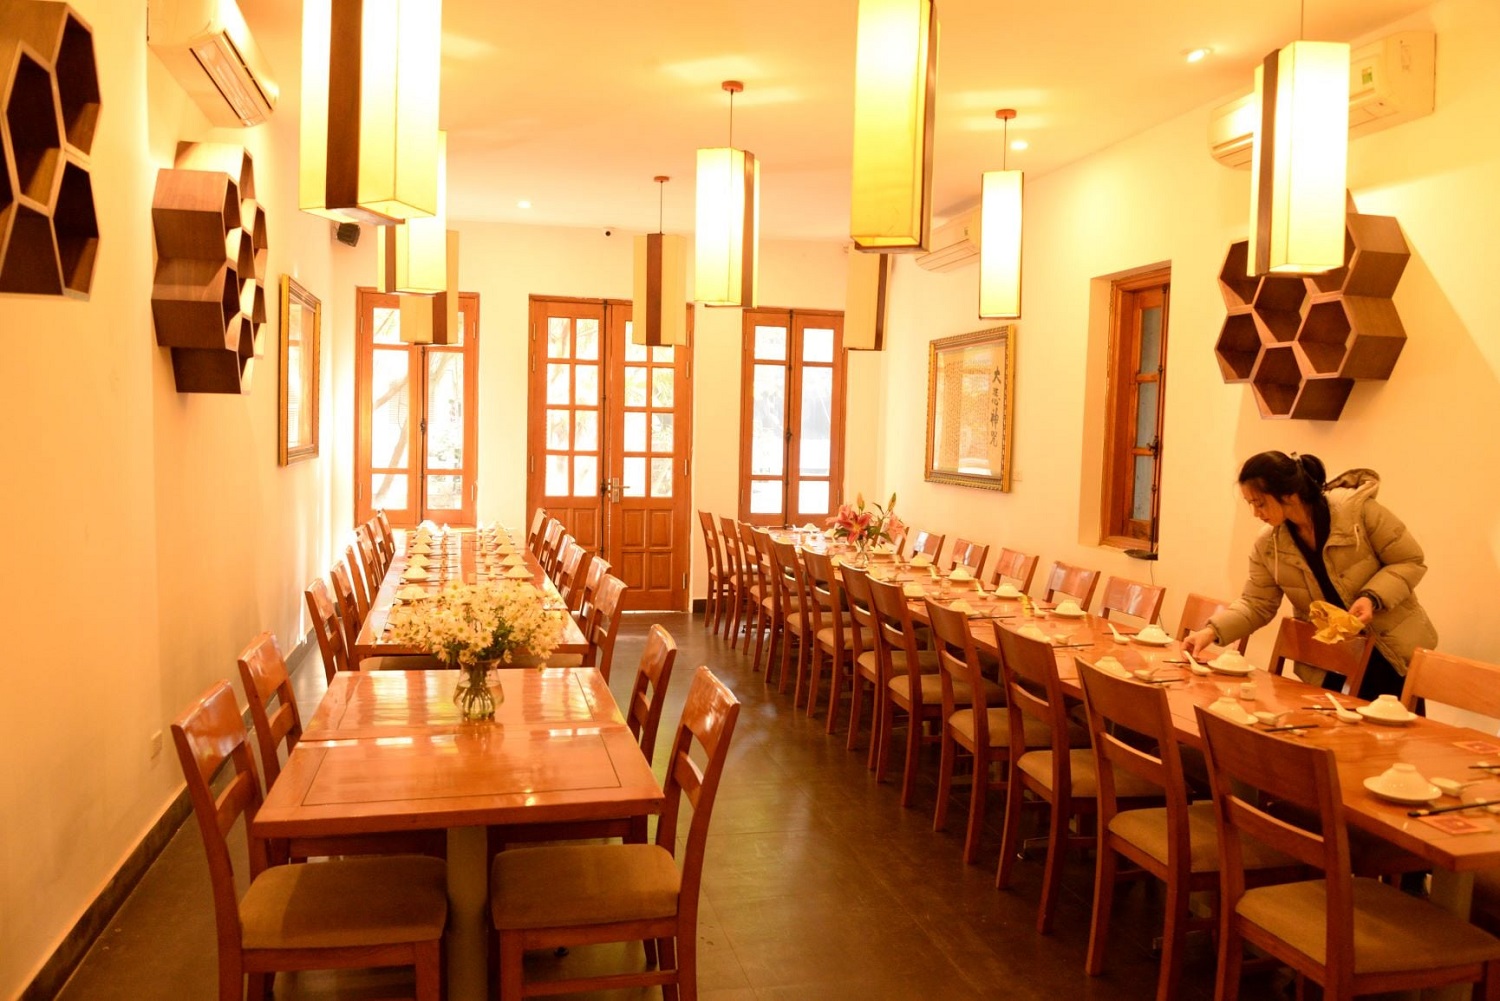 Nhà hàng Chay Aumme – Viên ngọc quý trong làng ẩm thực chay đất Hà Thành 9